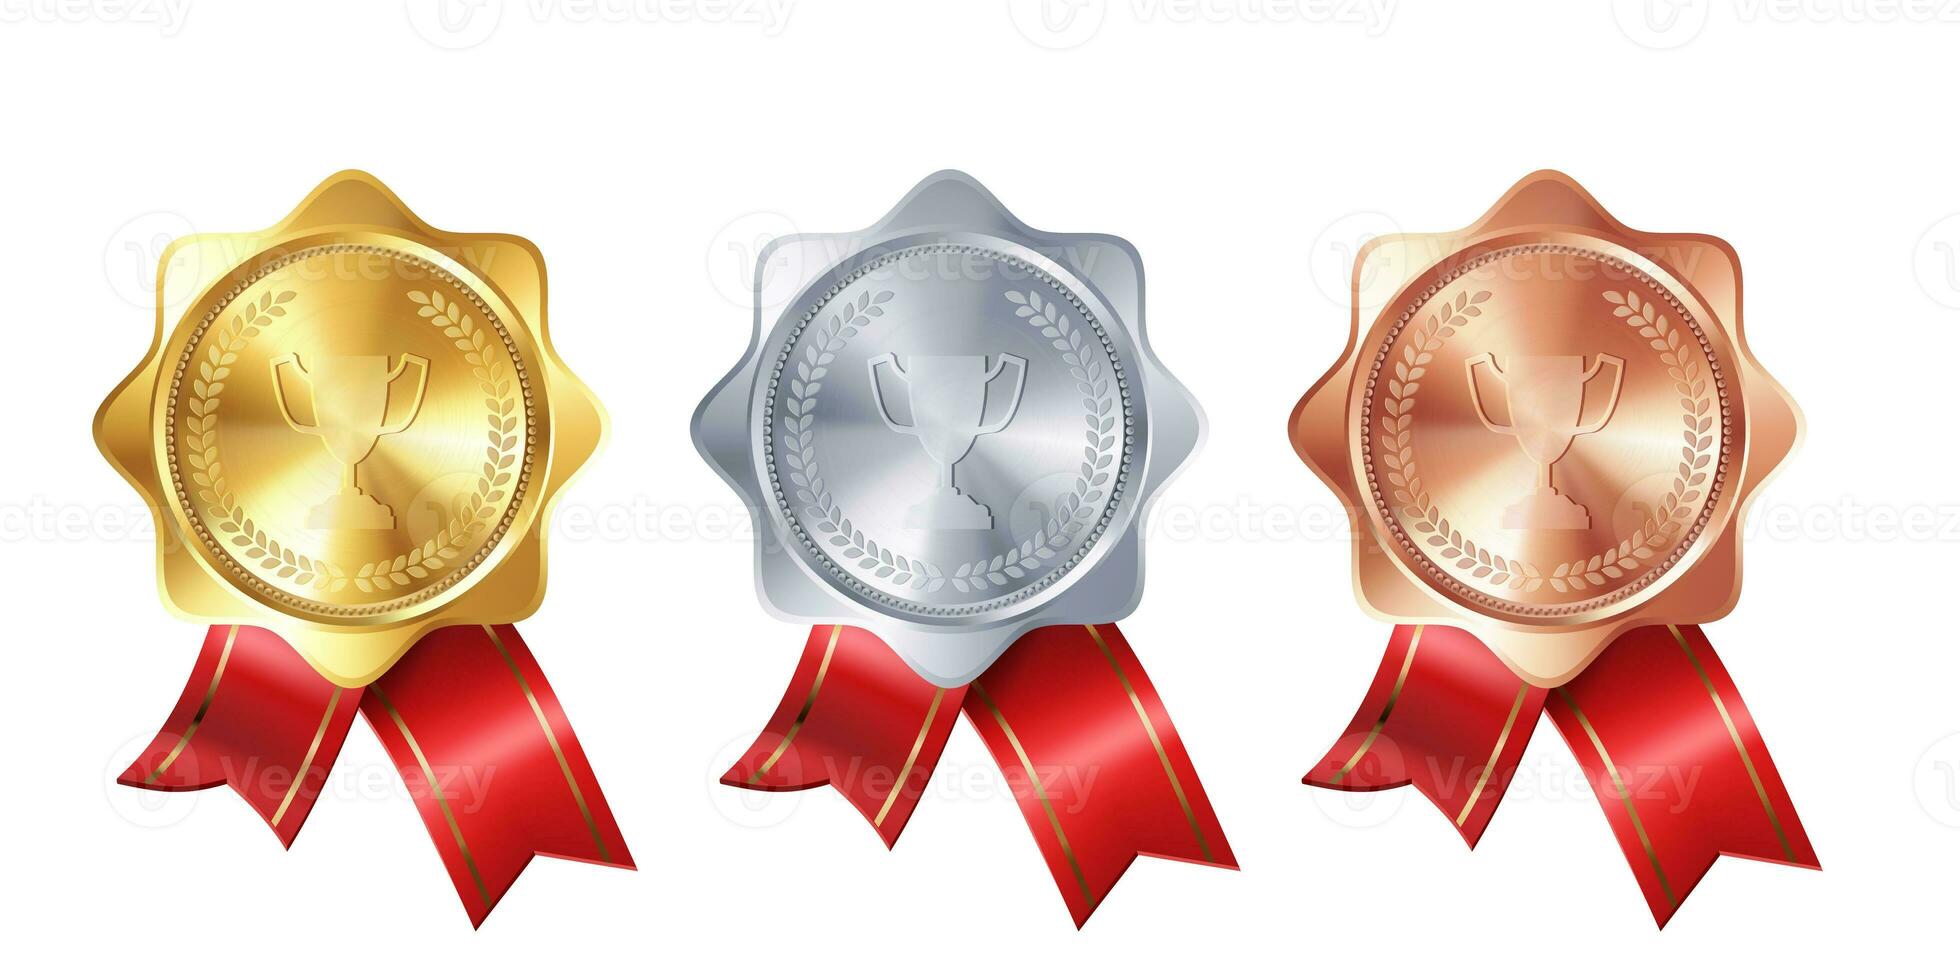 realistisch verzameling van goud, zilver, en bronzen prijs medailles met rood lint rozetten en gegraveerde winnaar's beker. vector set. premie badges voor winnaars en prestaties. foto